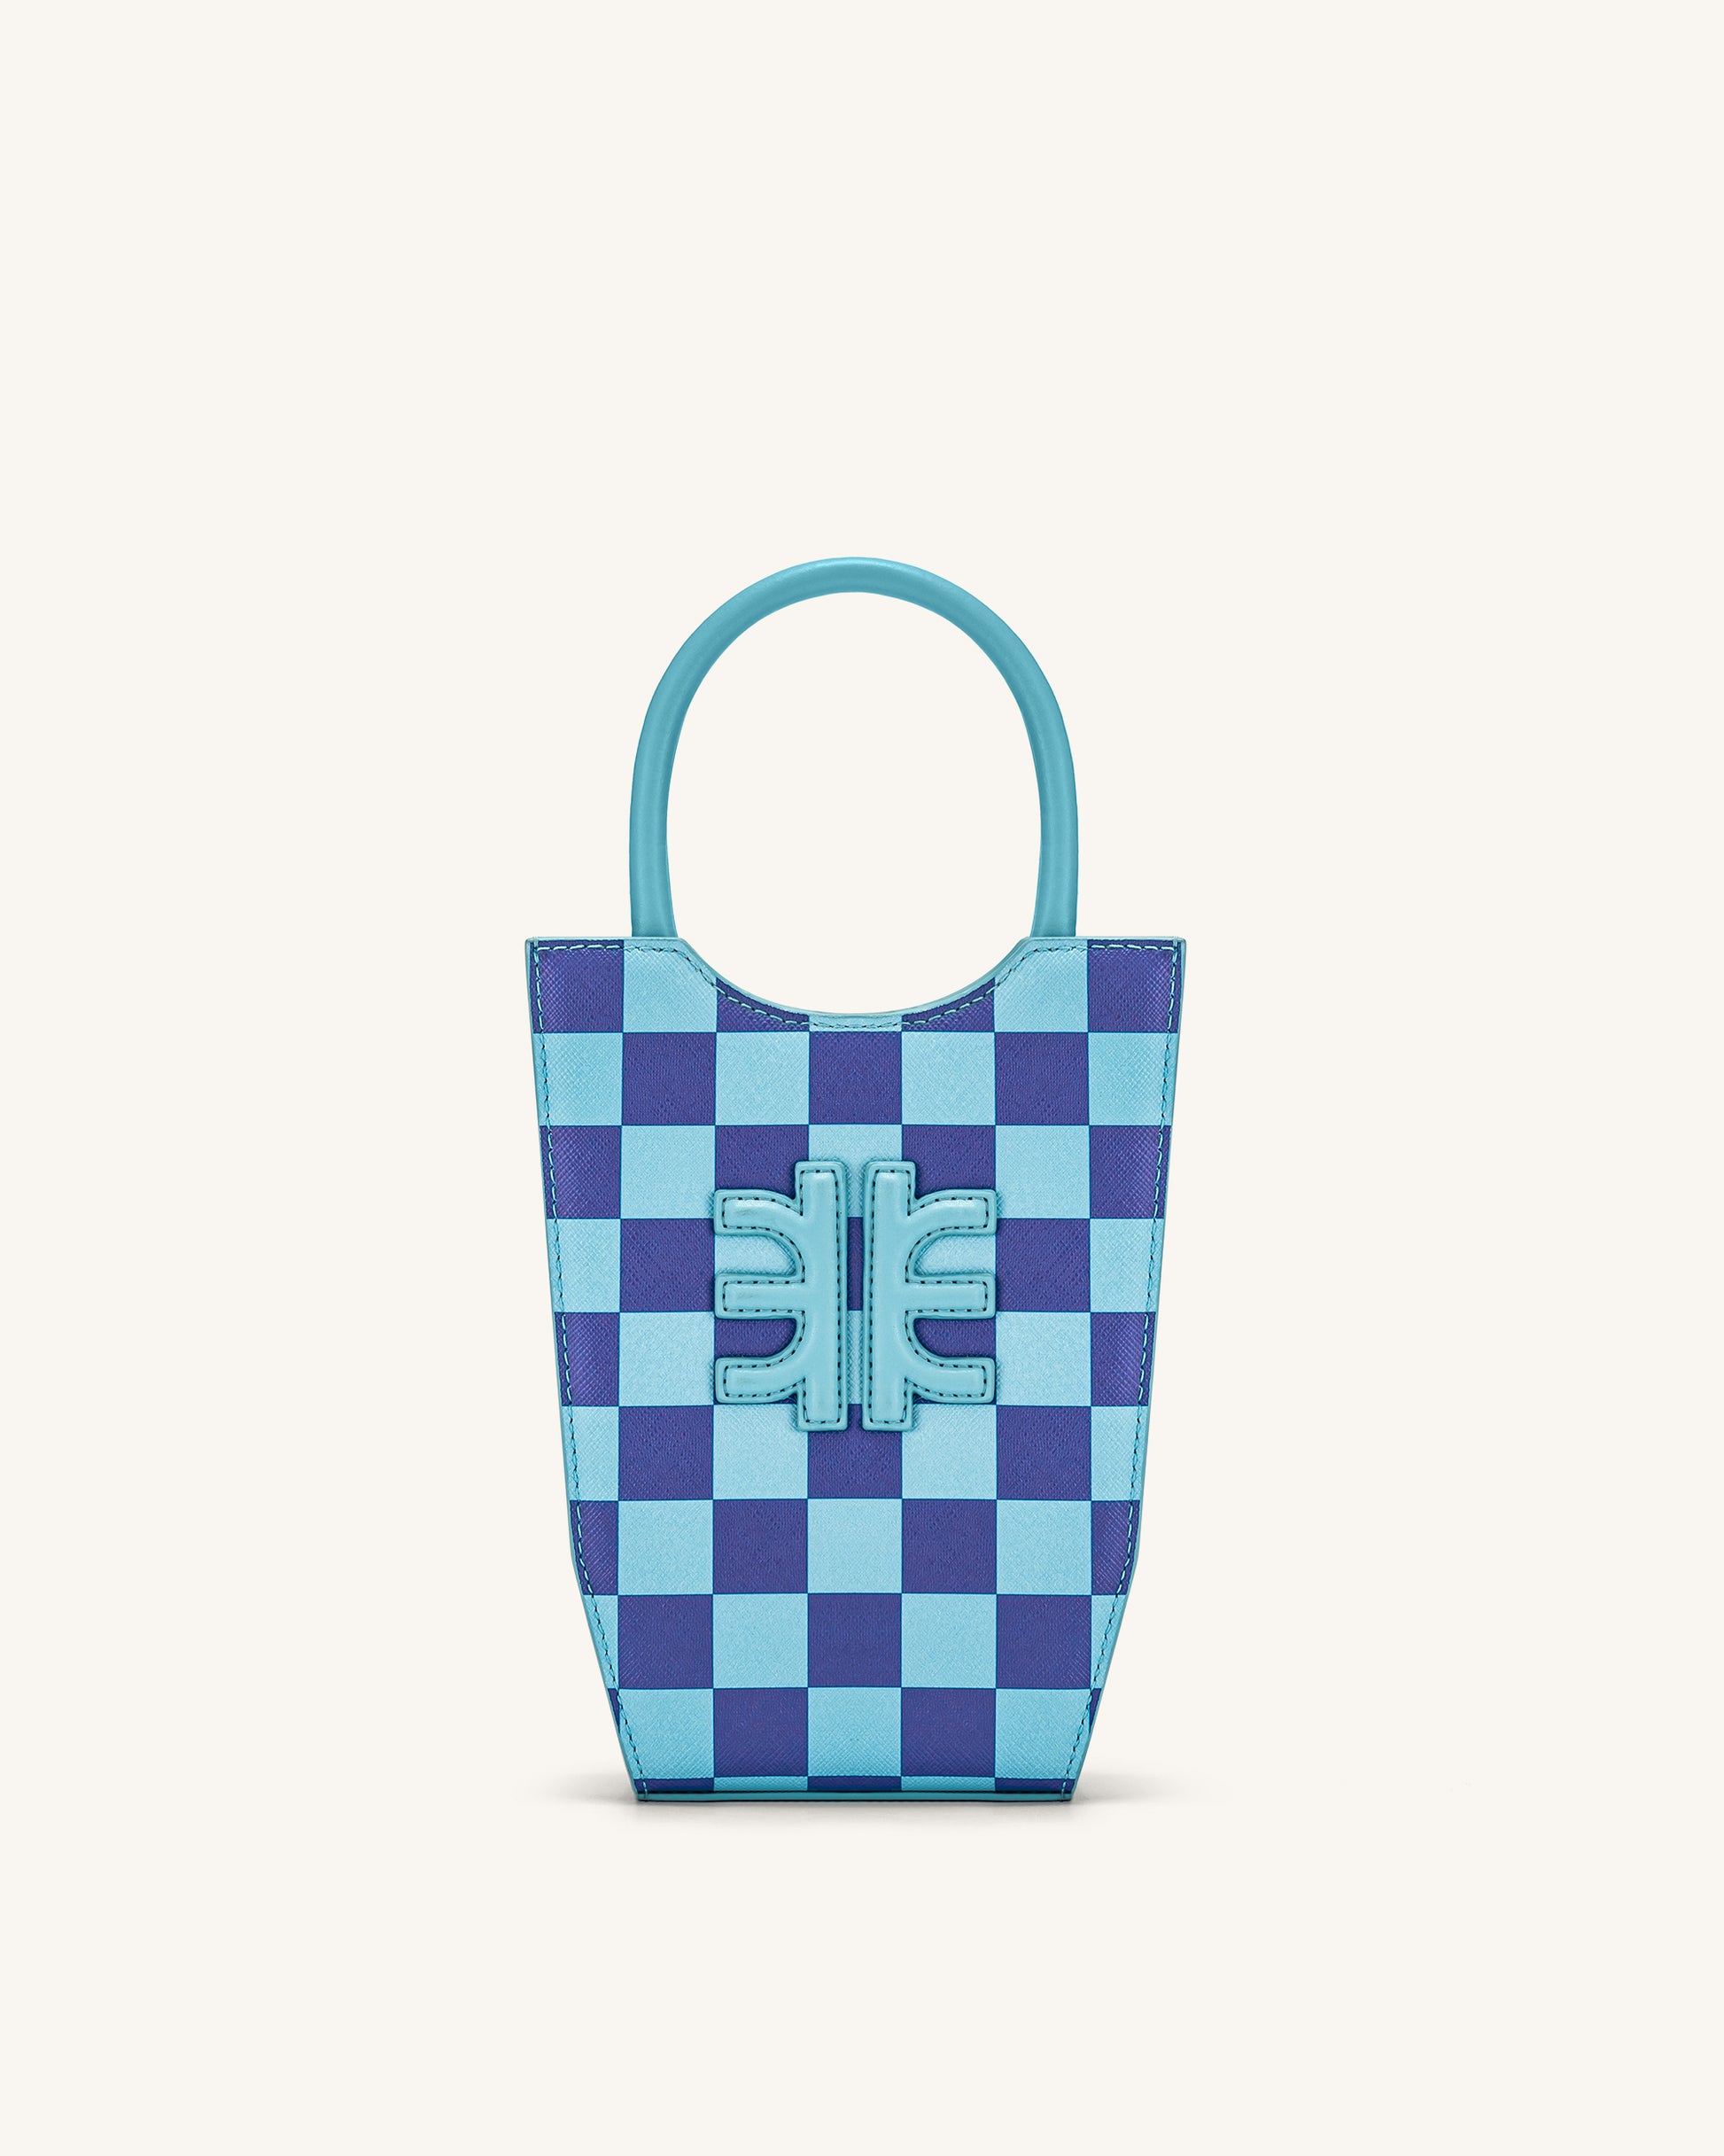 FEI Checkerboard Phone Bag - Light Blue & Dark Blue - JW PEI